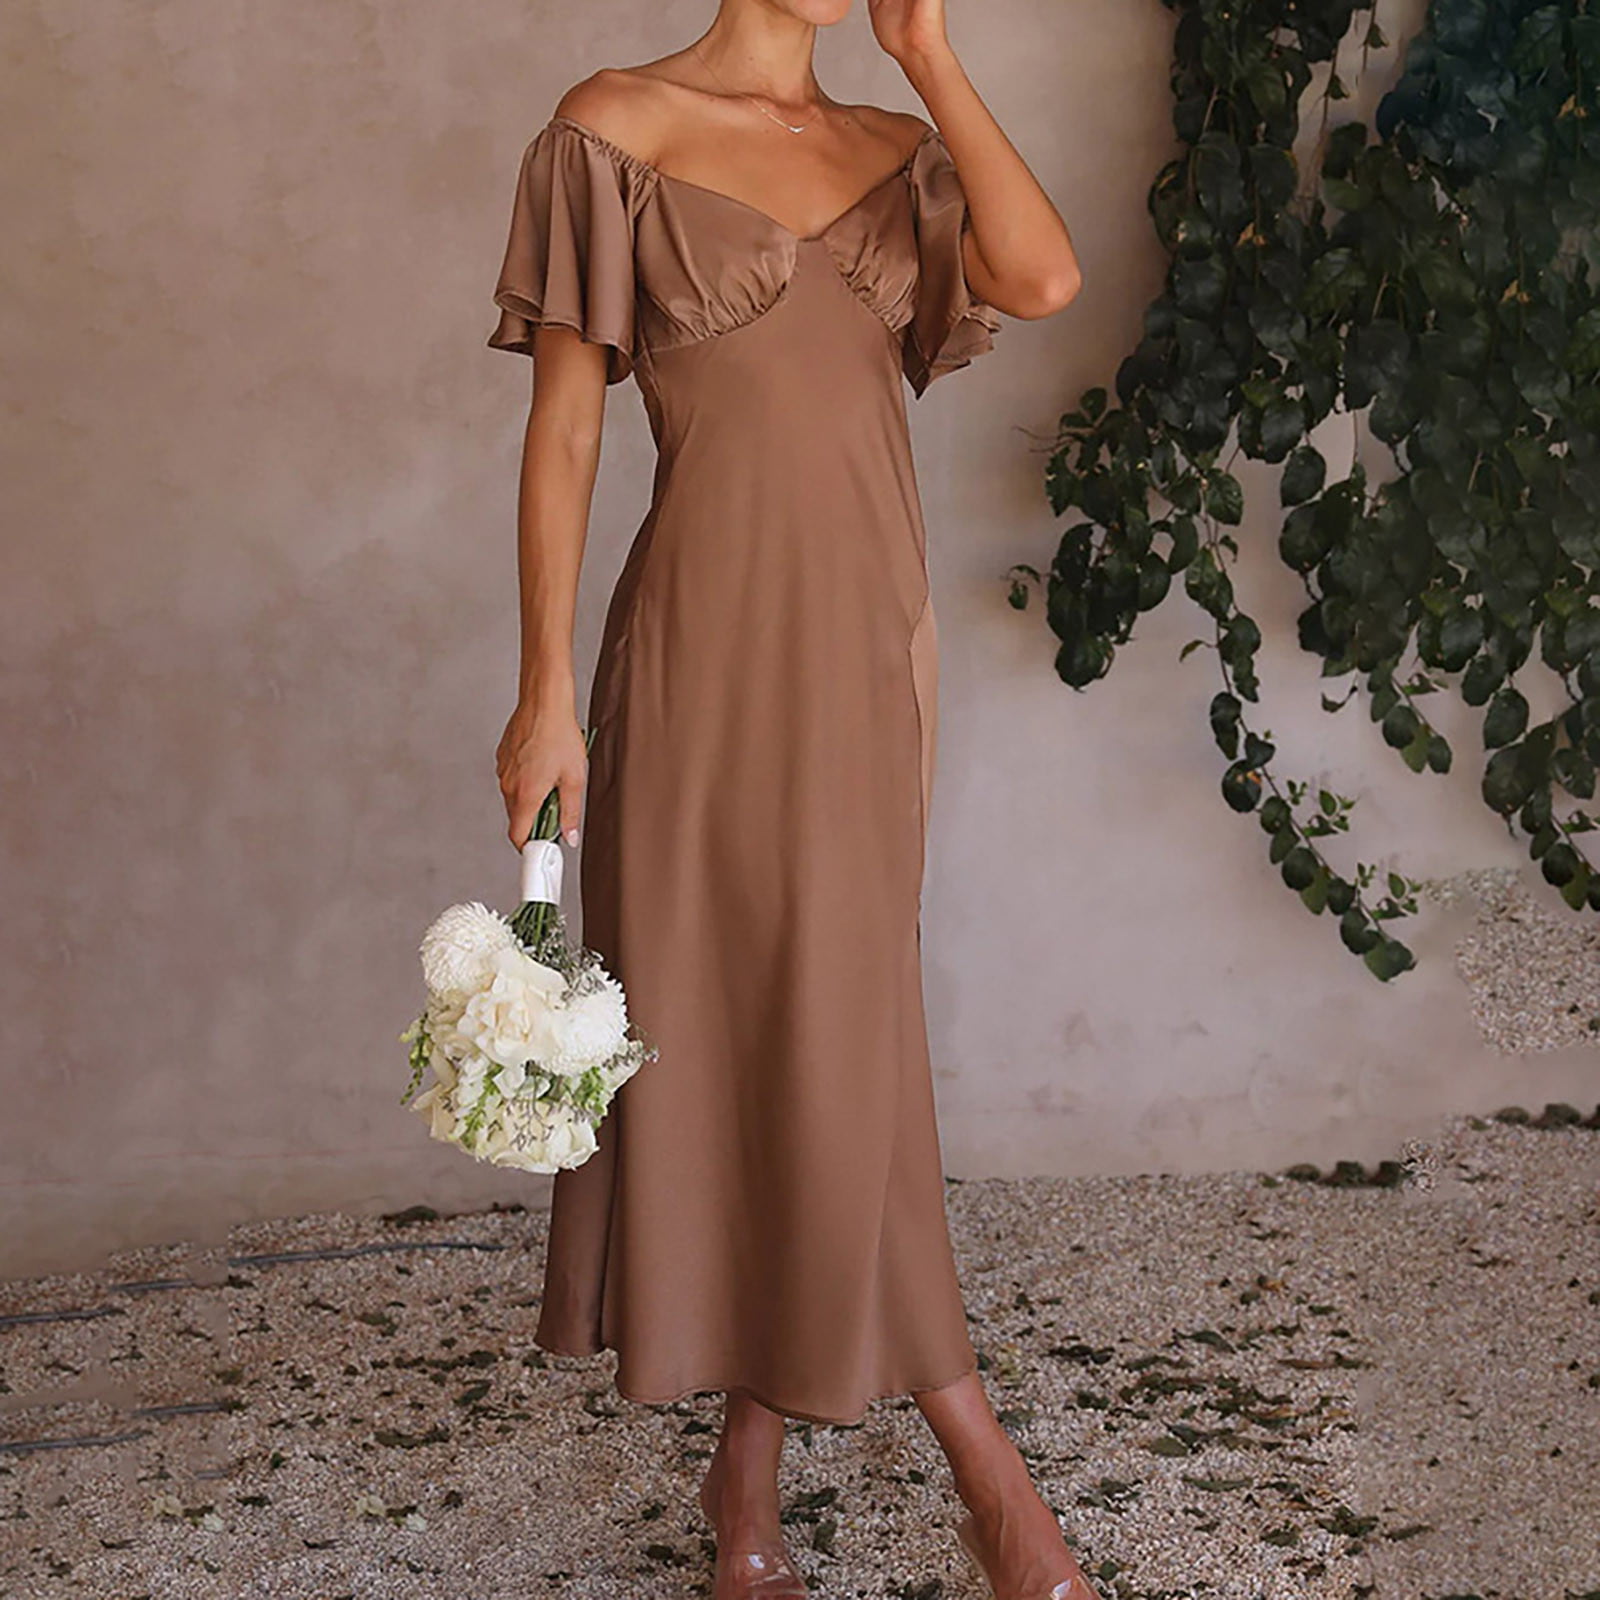 Chic Elegant Coffee Color V-Neck Floral Dress | Clotheshomes™